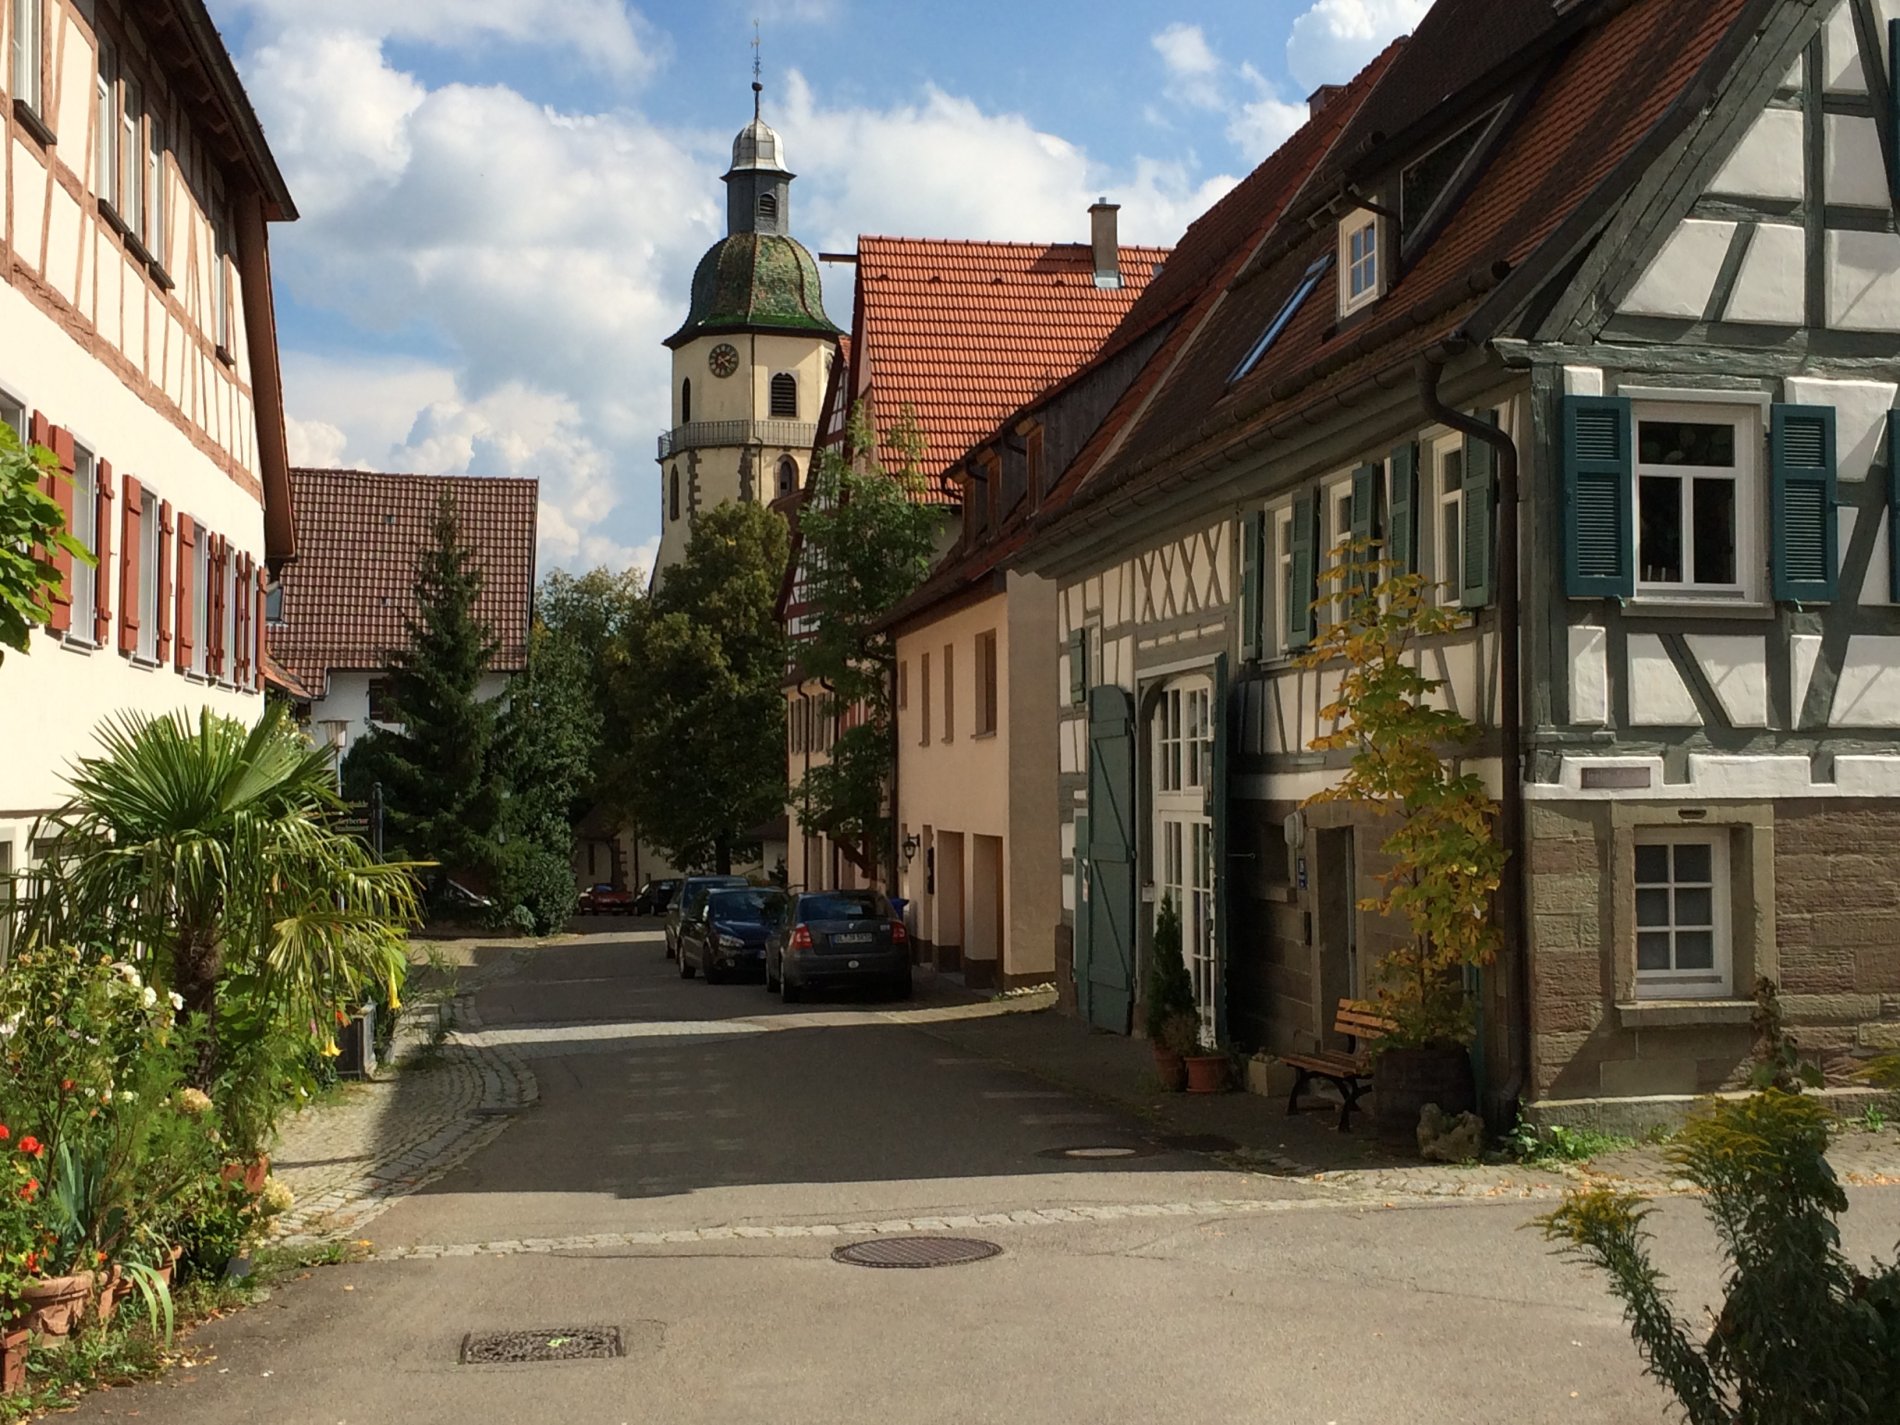 Gasse mit Fachwerkhäusern und der Kirche Rosenfeld